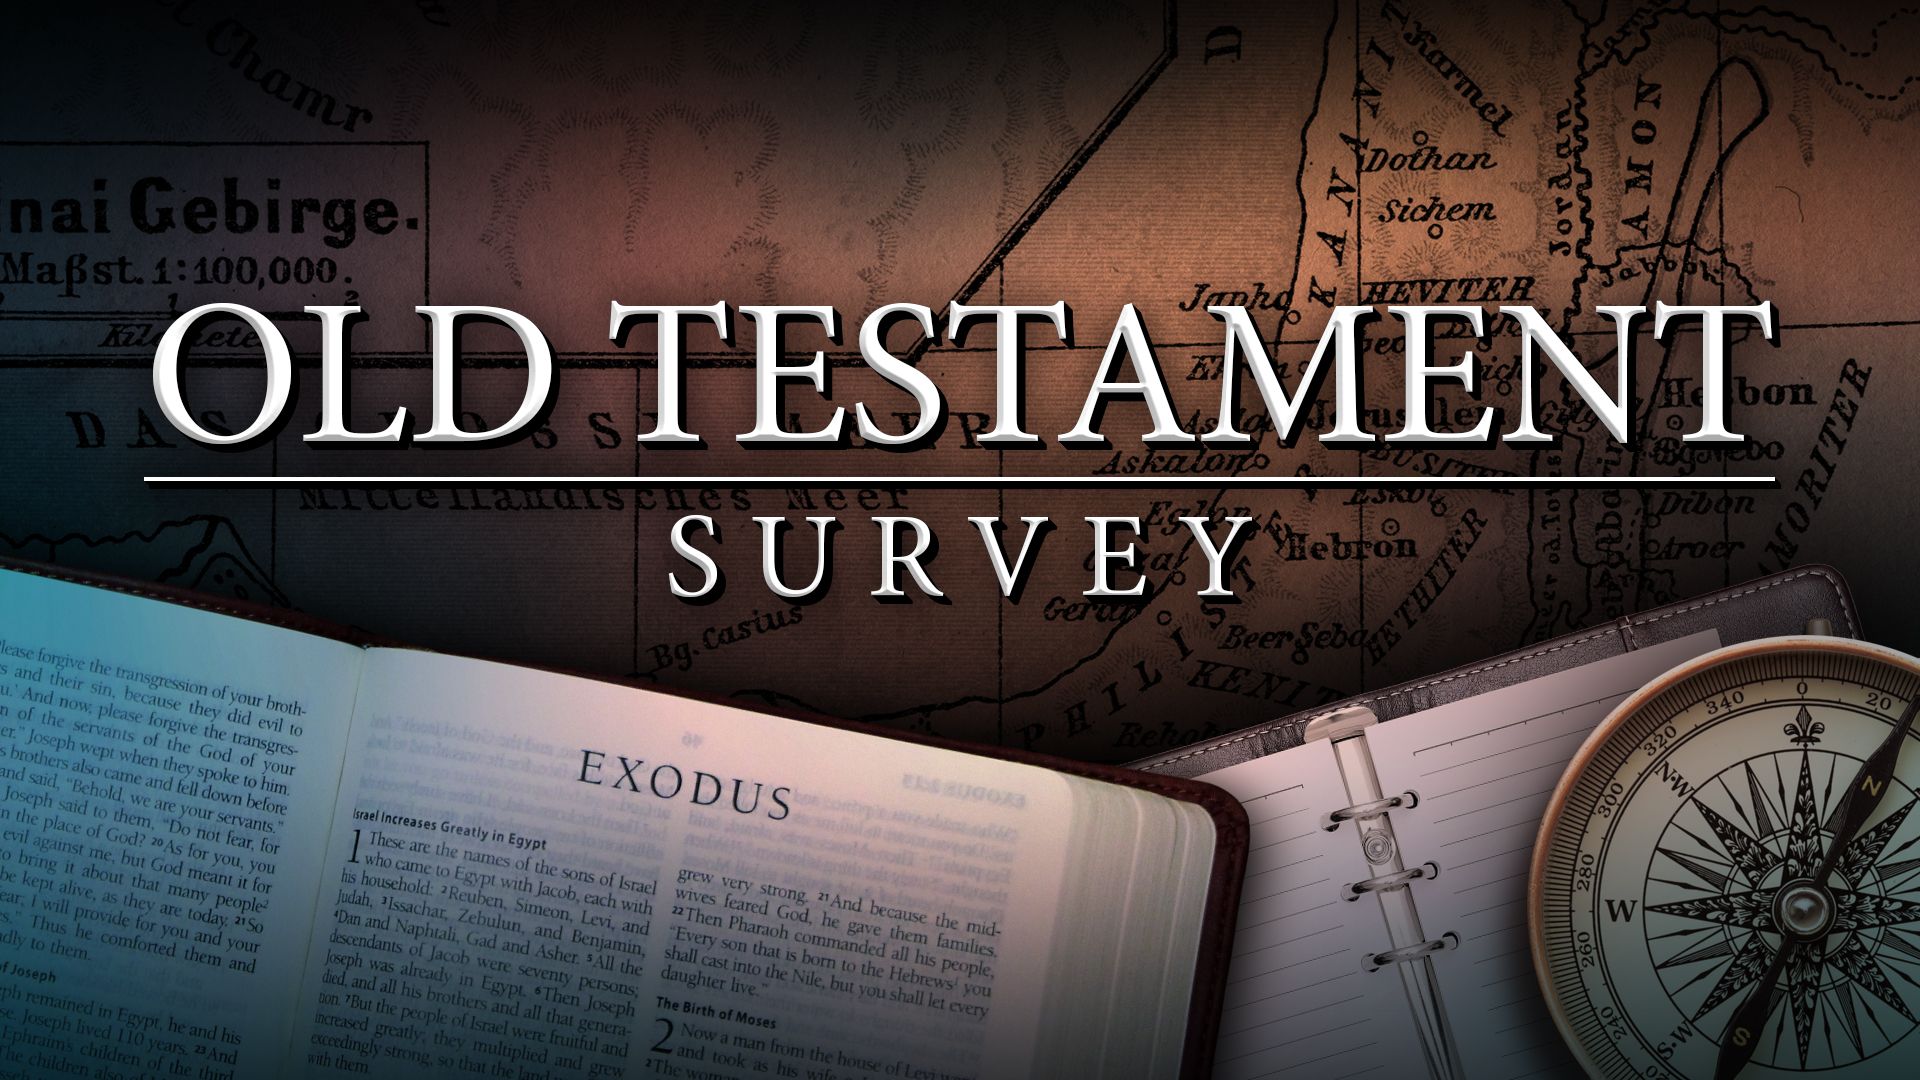 Old Testament Survey Course Part 2